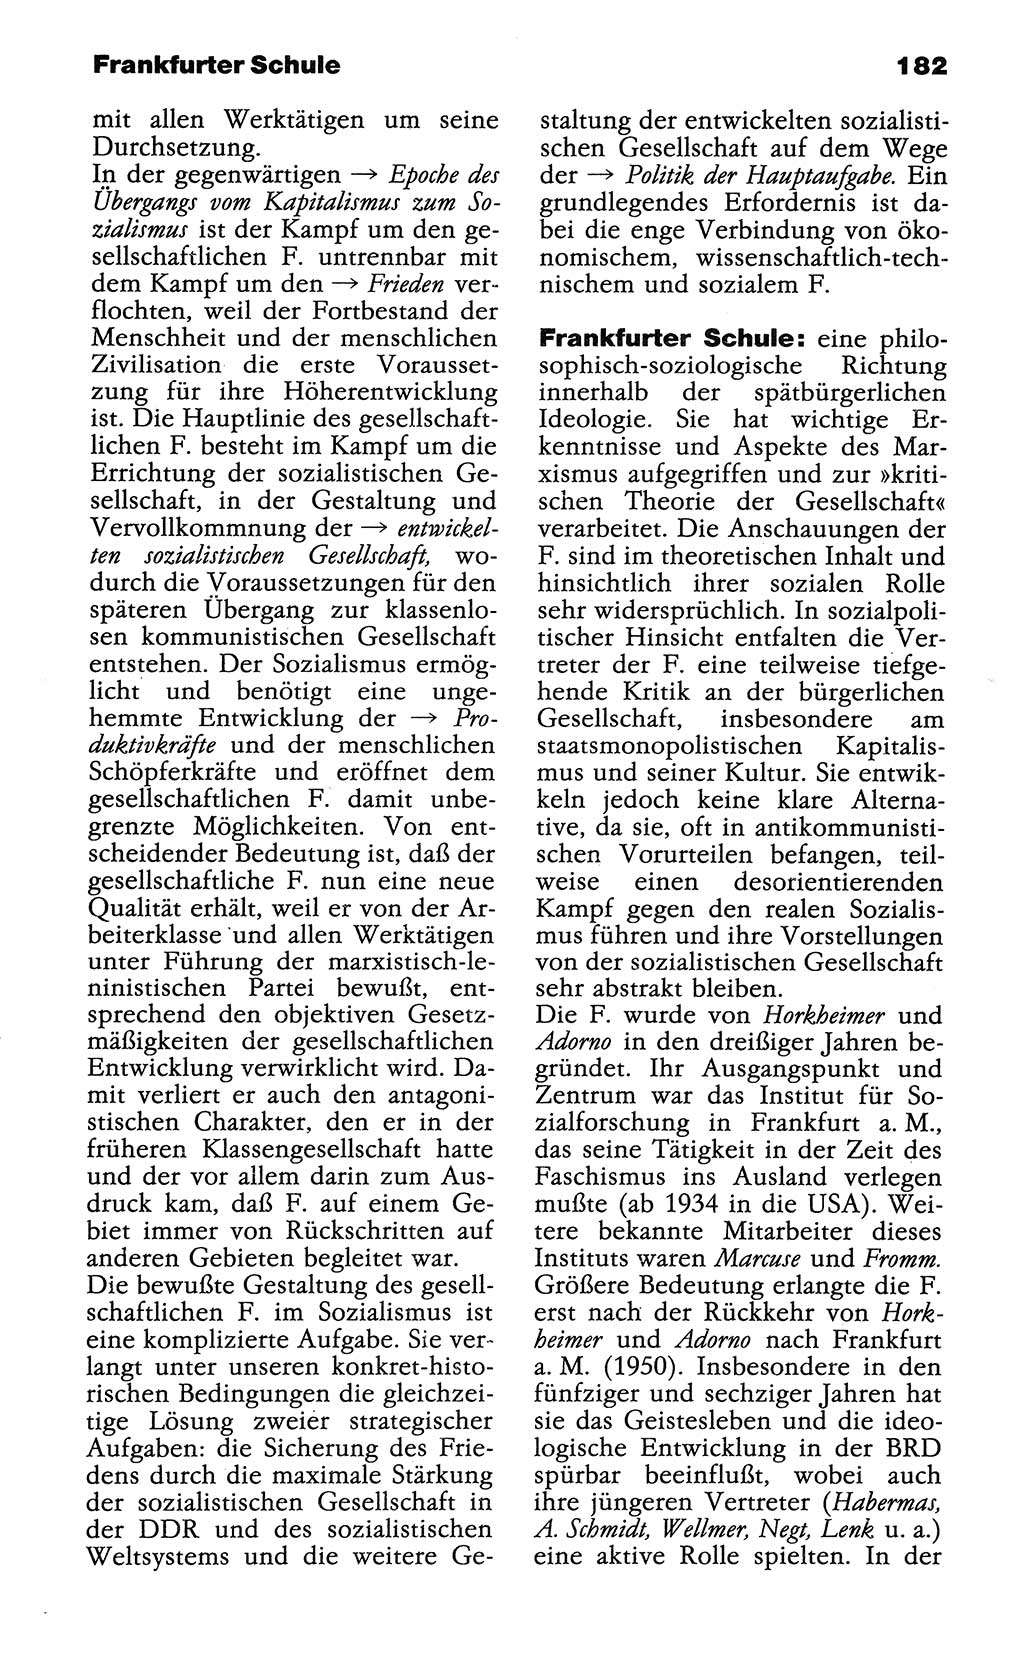 Wörterbuch der marxistisch-leninistischen Philosophie [Deutsche Demokratische Republik (DDR)] 1985, Seite 182 (Wb. ML Phil. DDR 1985, S. 182)